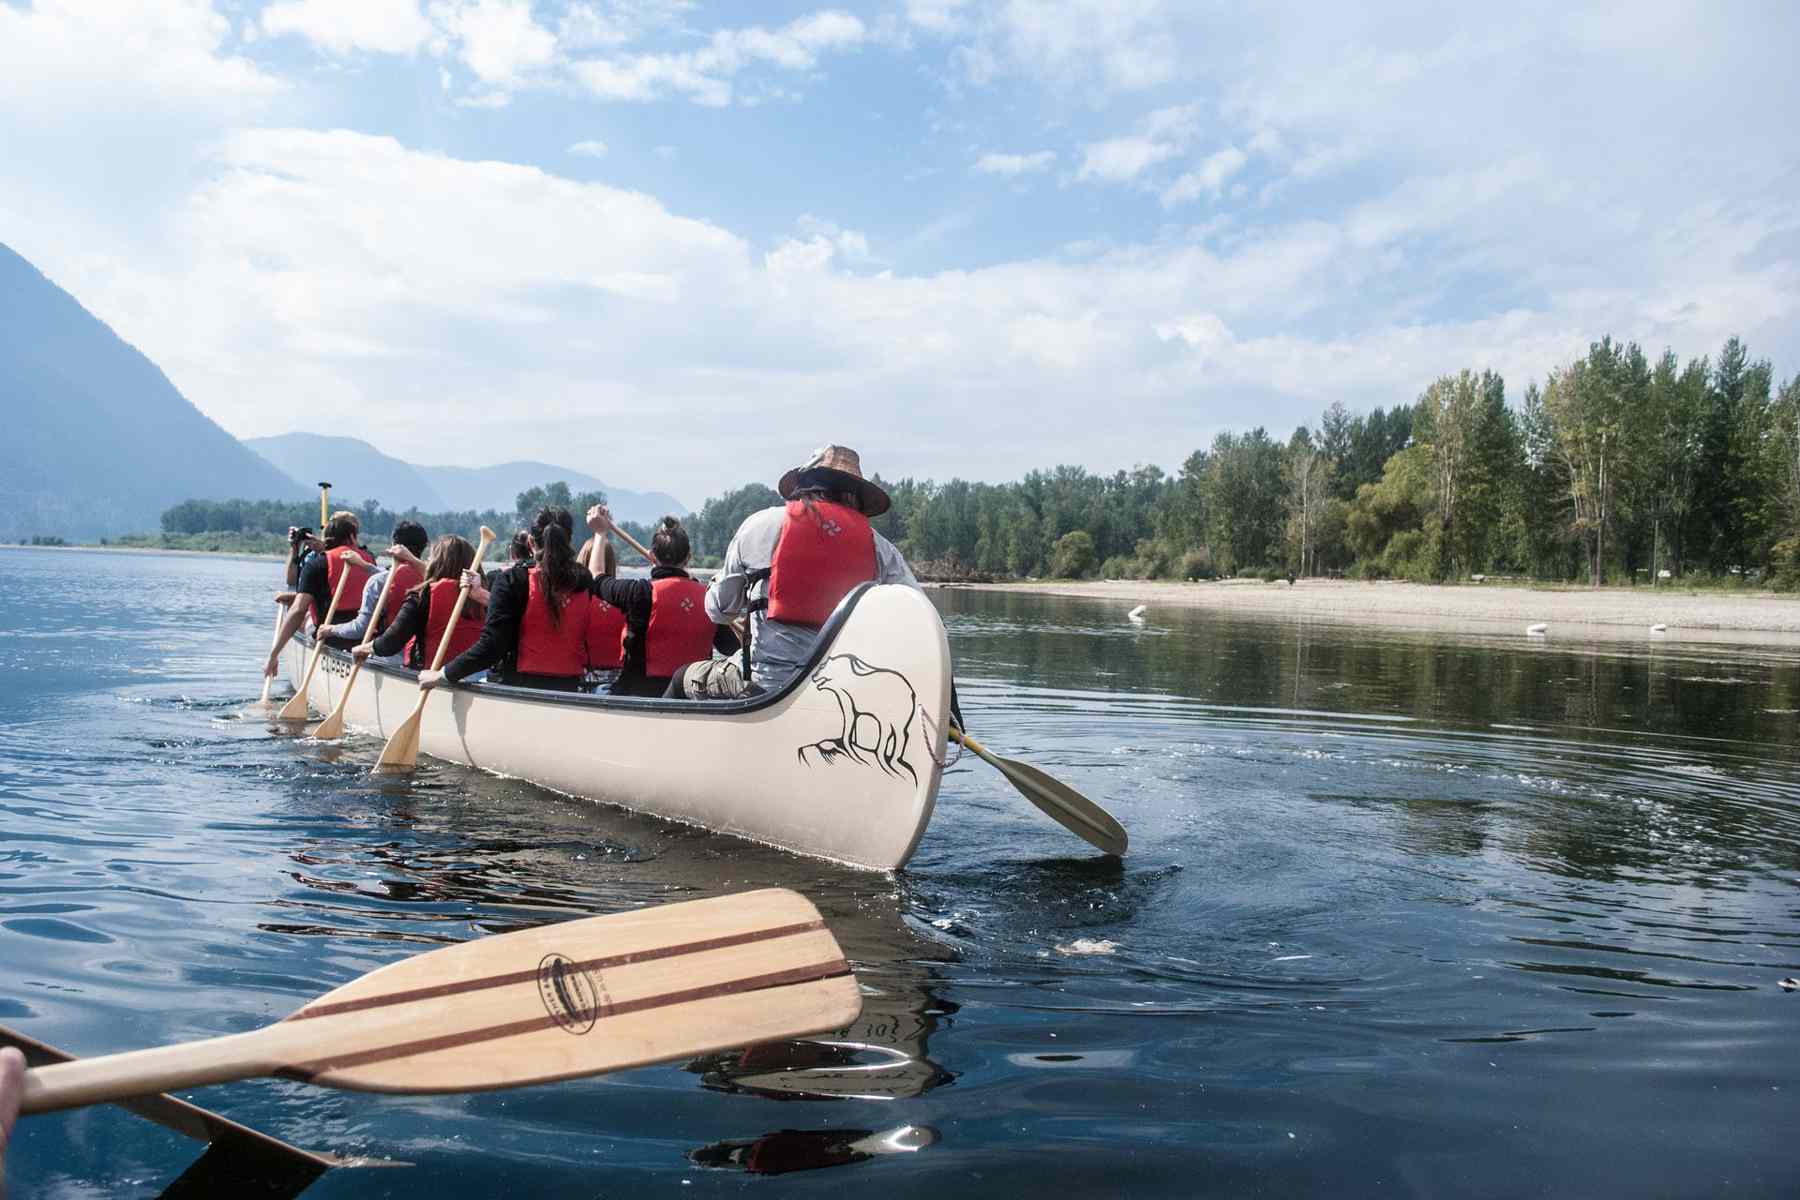 Groupe de jeunes faisant du canoë ensemble - Moccasin Trails, Kamloops BC